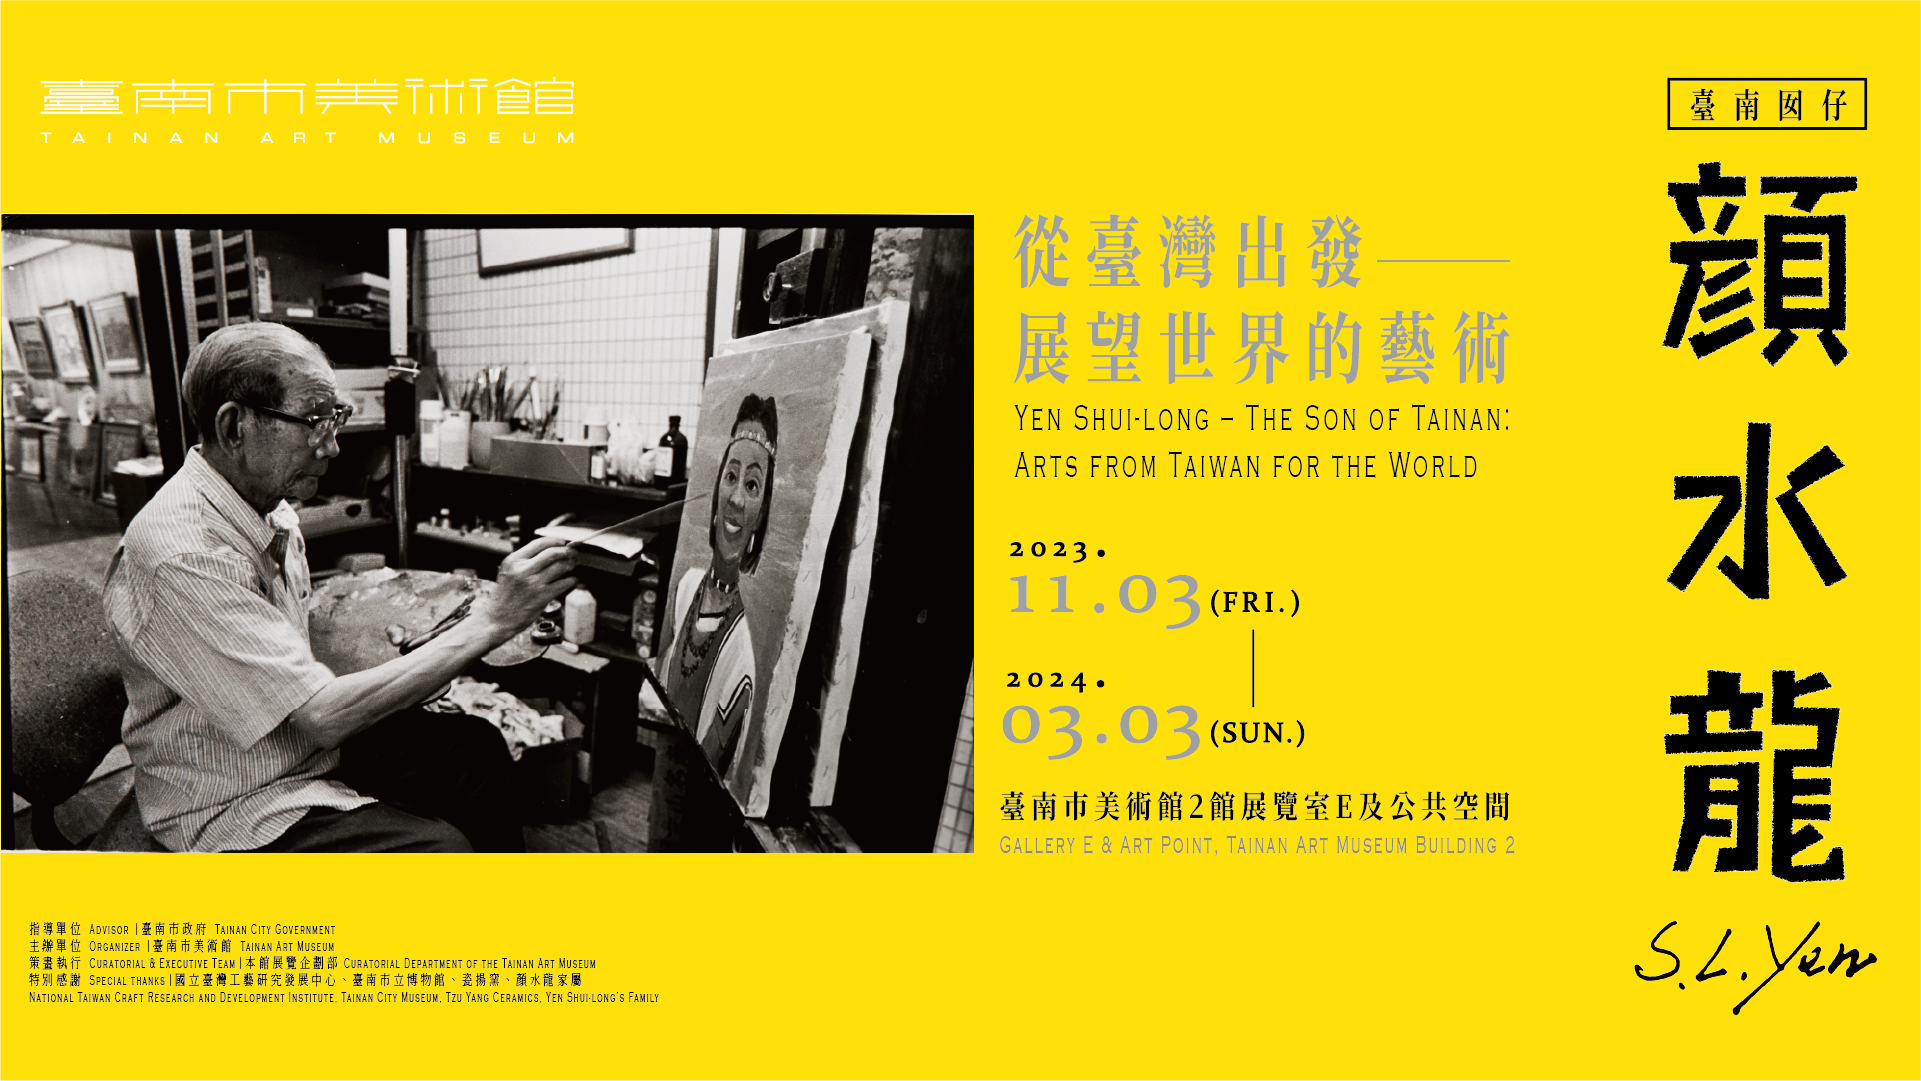 臺南囡仔顏水龍──從臺灣出發 展望世界的藝術 Yen Shui-long – The son of Tainan: Arts from Taiwan for the World